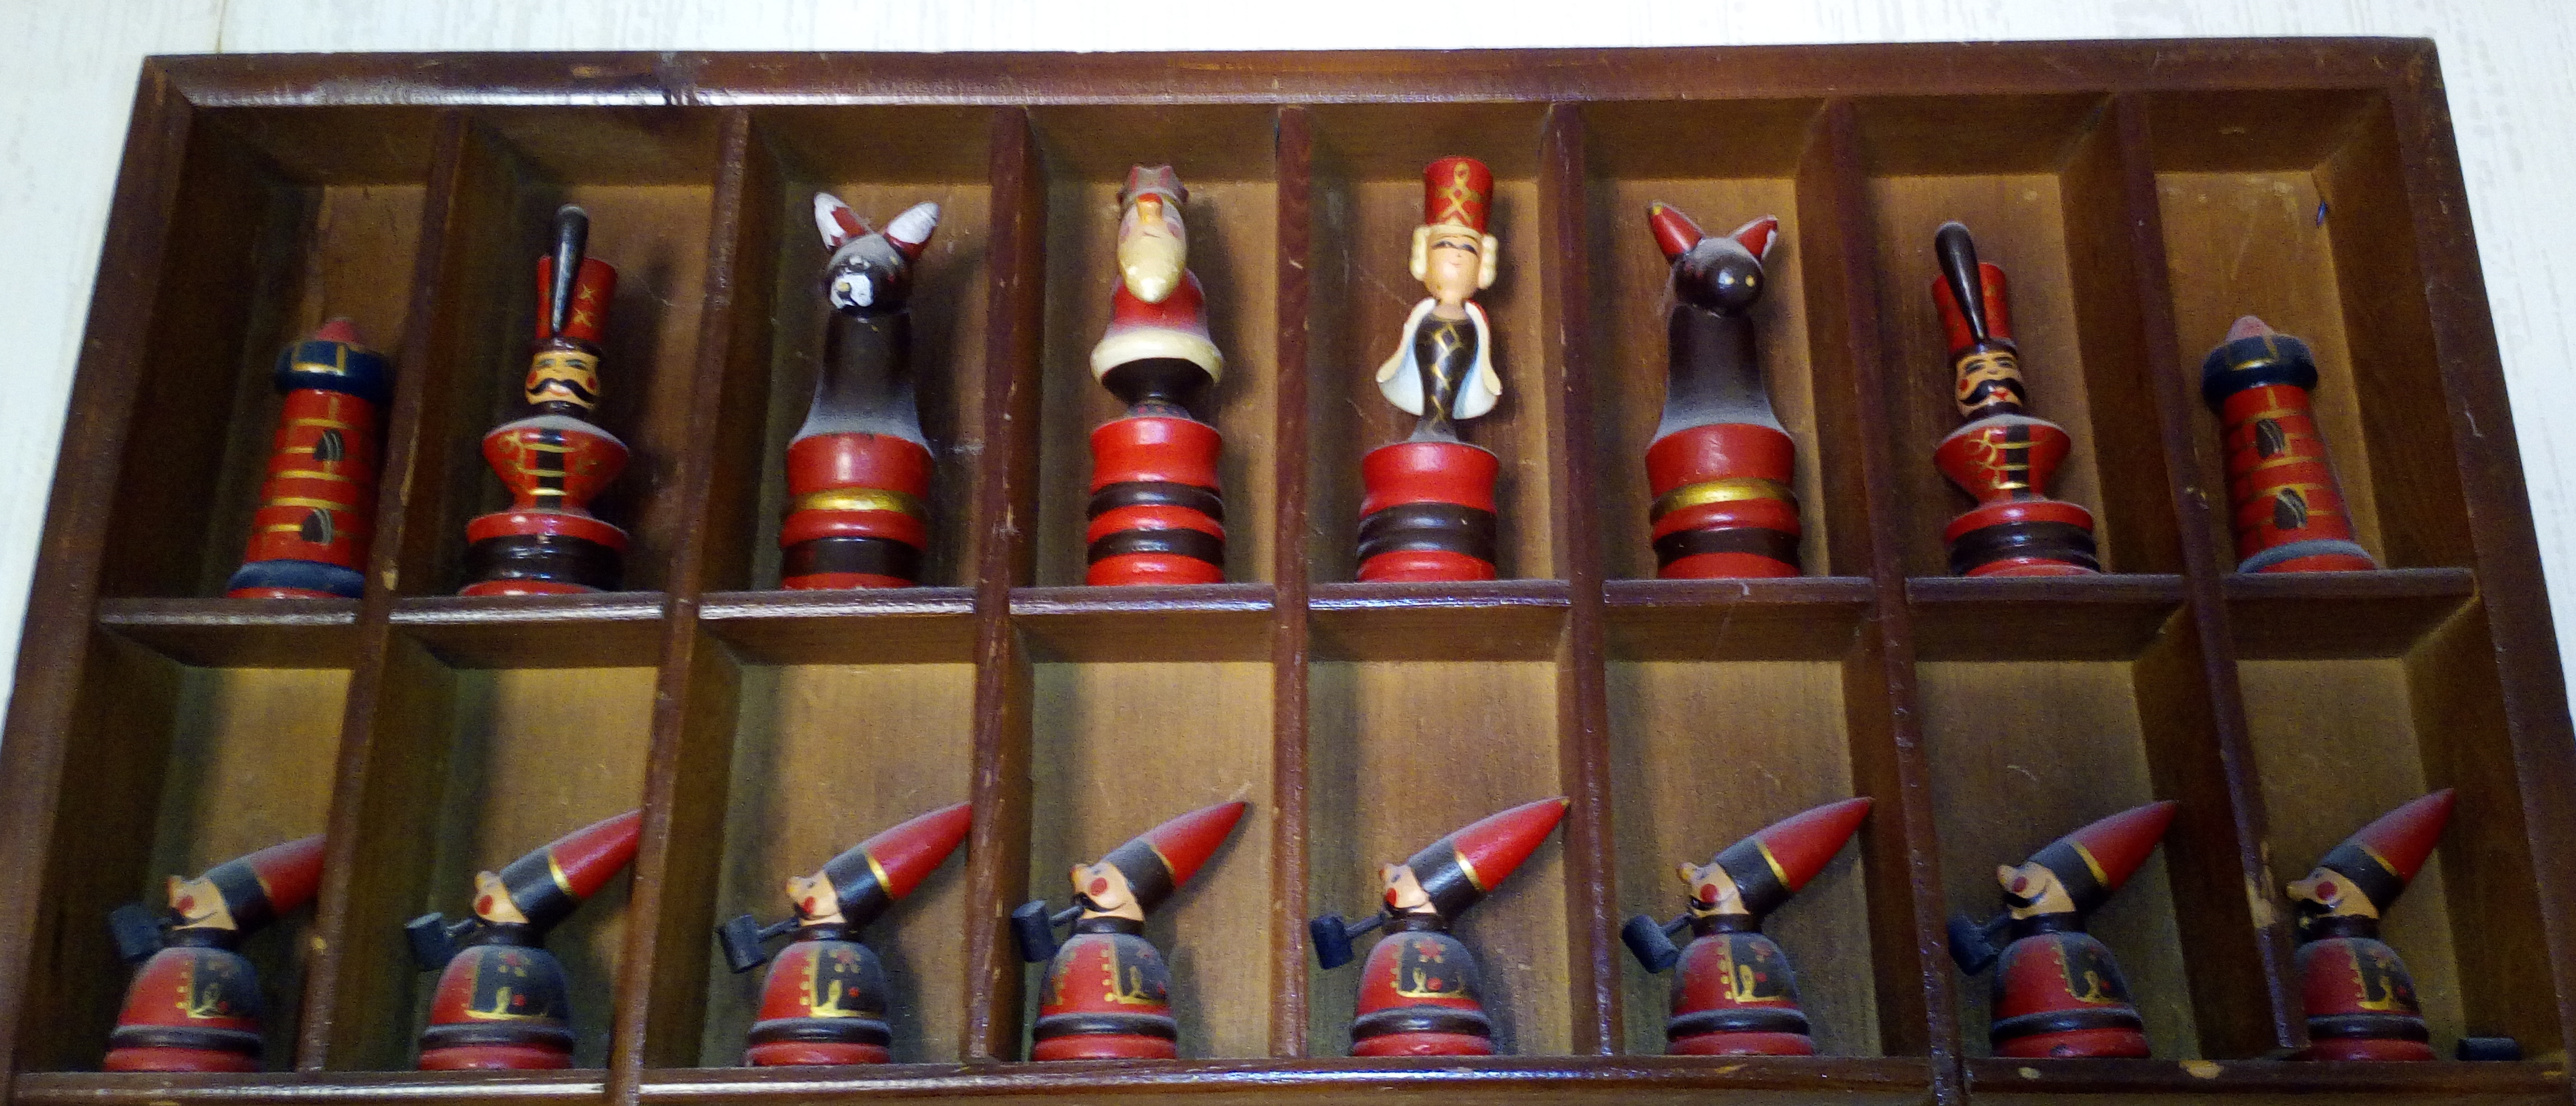 Ein Foto von diversen hölzernen Schachfiguren; die Bauern rauchen Pfeife.